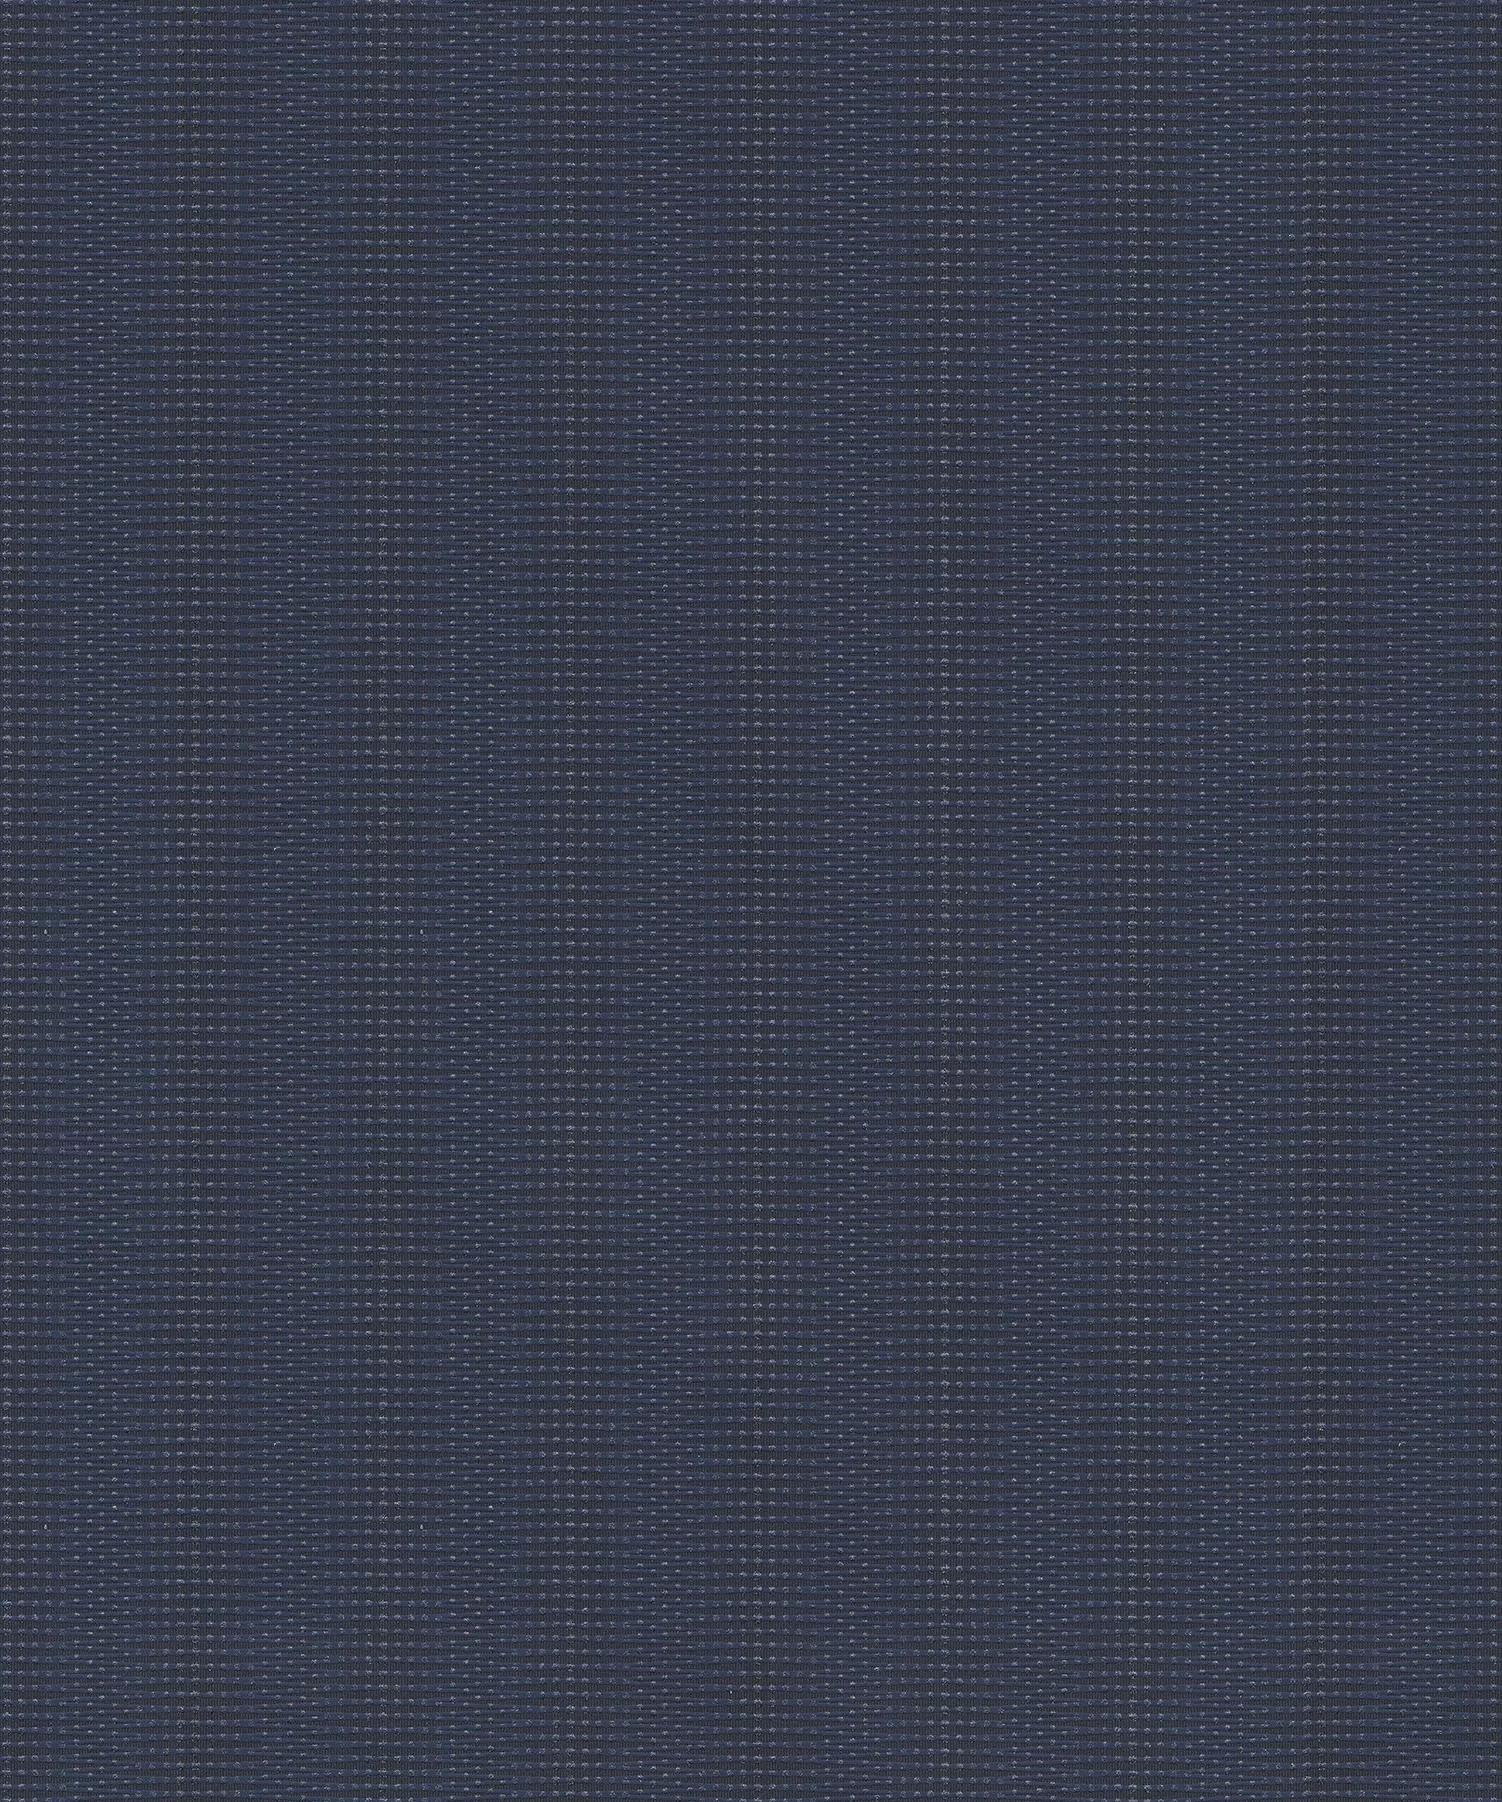 Vlies tapéta kék színben modern struktúrált csíkos mintával ezüstös csillogással